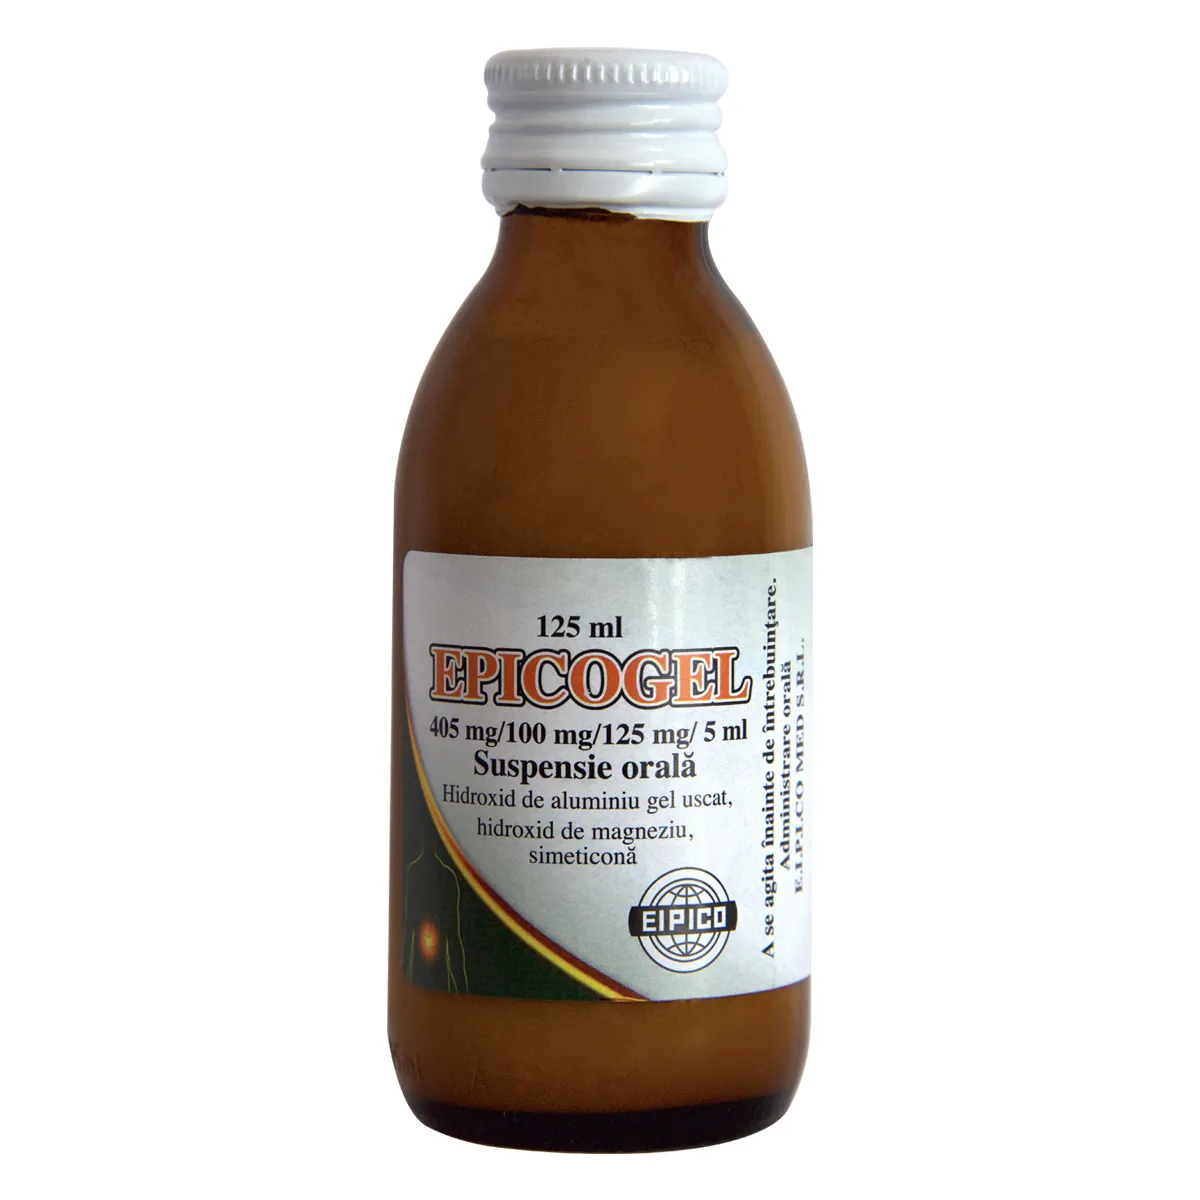 Epicogel suspensie, 125 ml, Eipico 